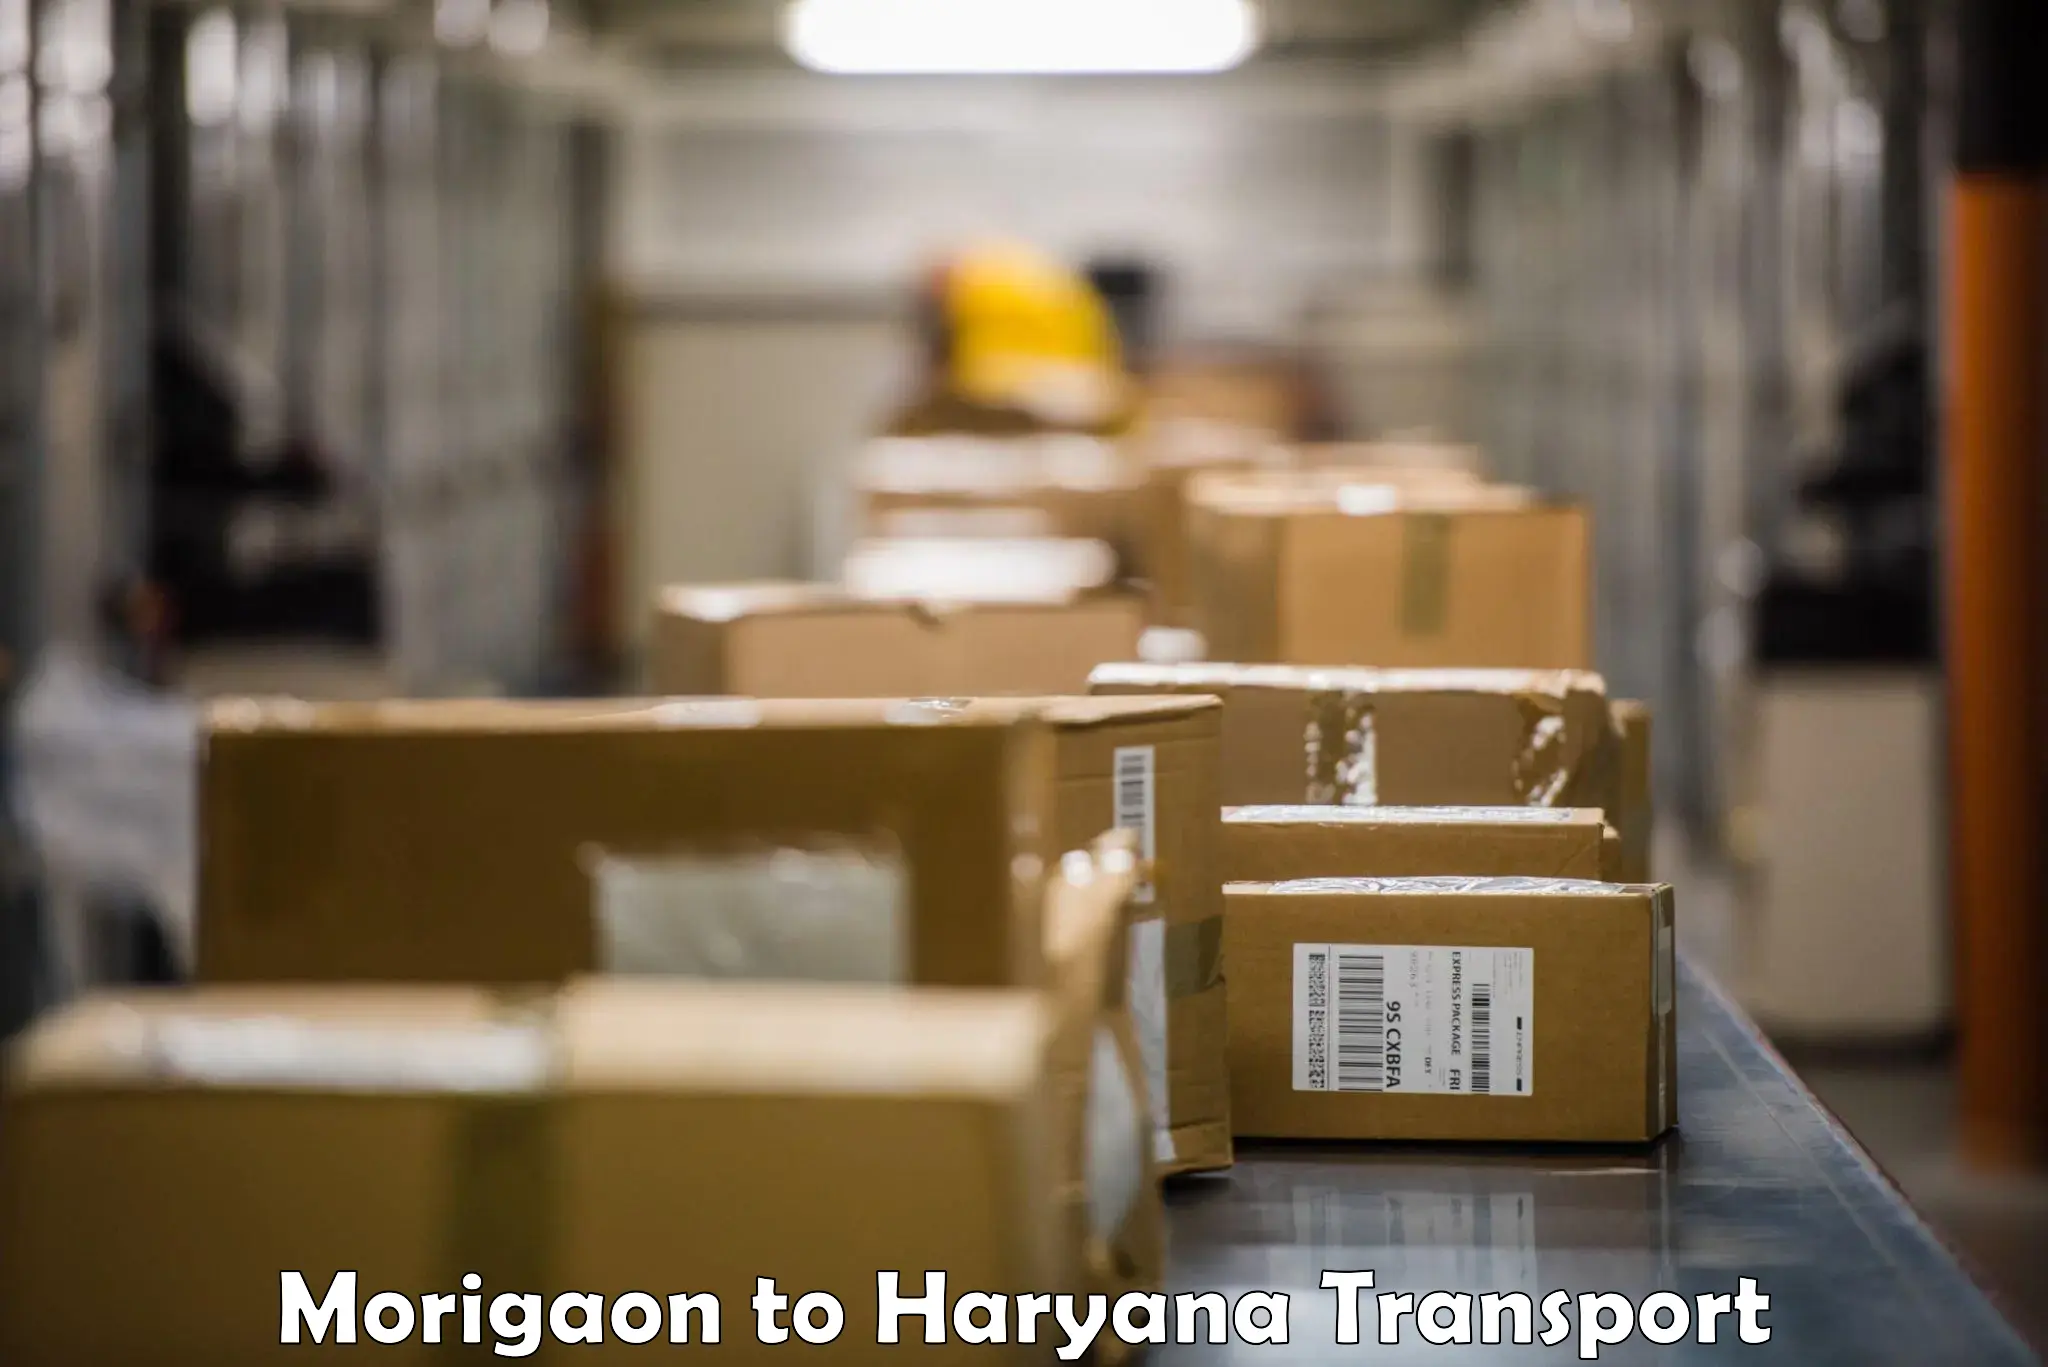 Daily transport service Morigaon to Narwana